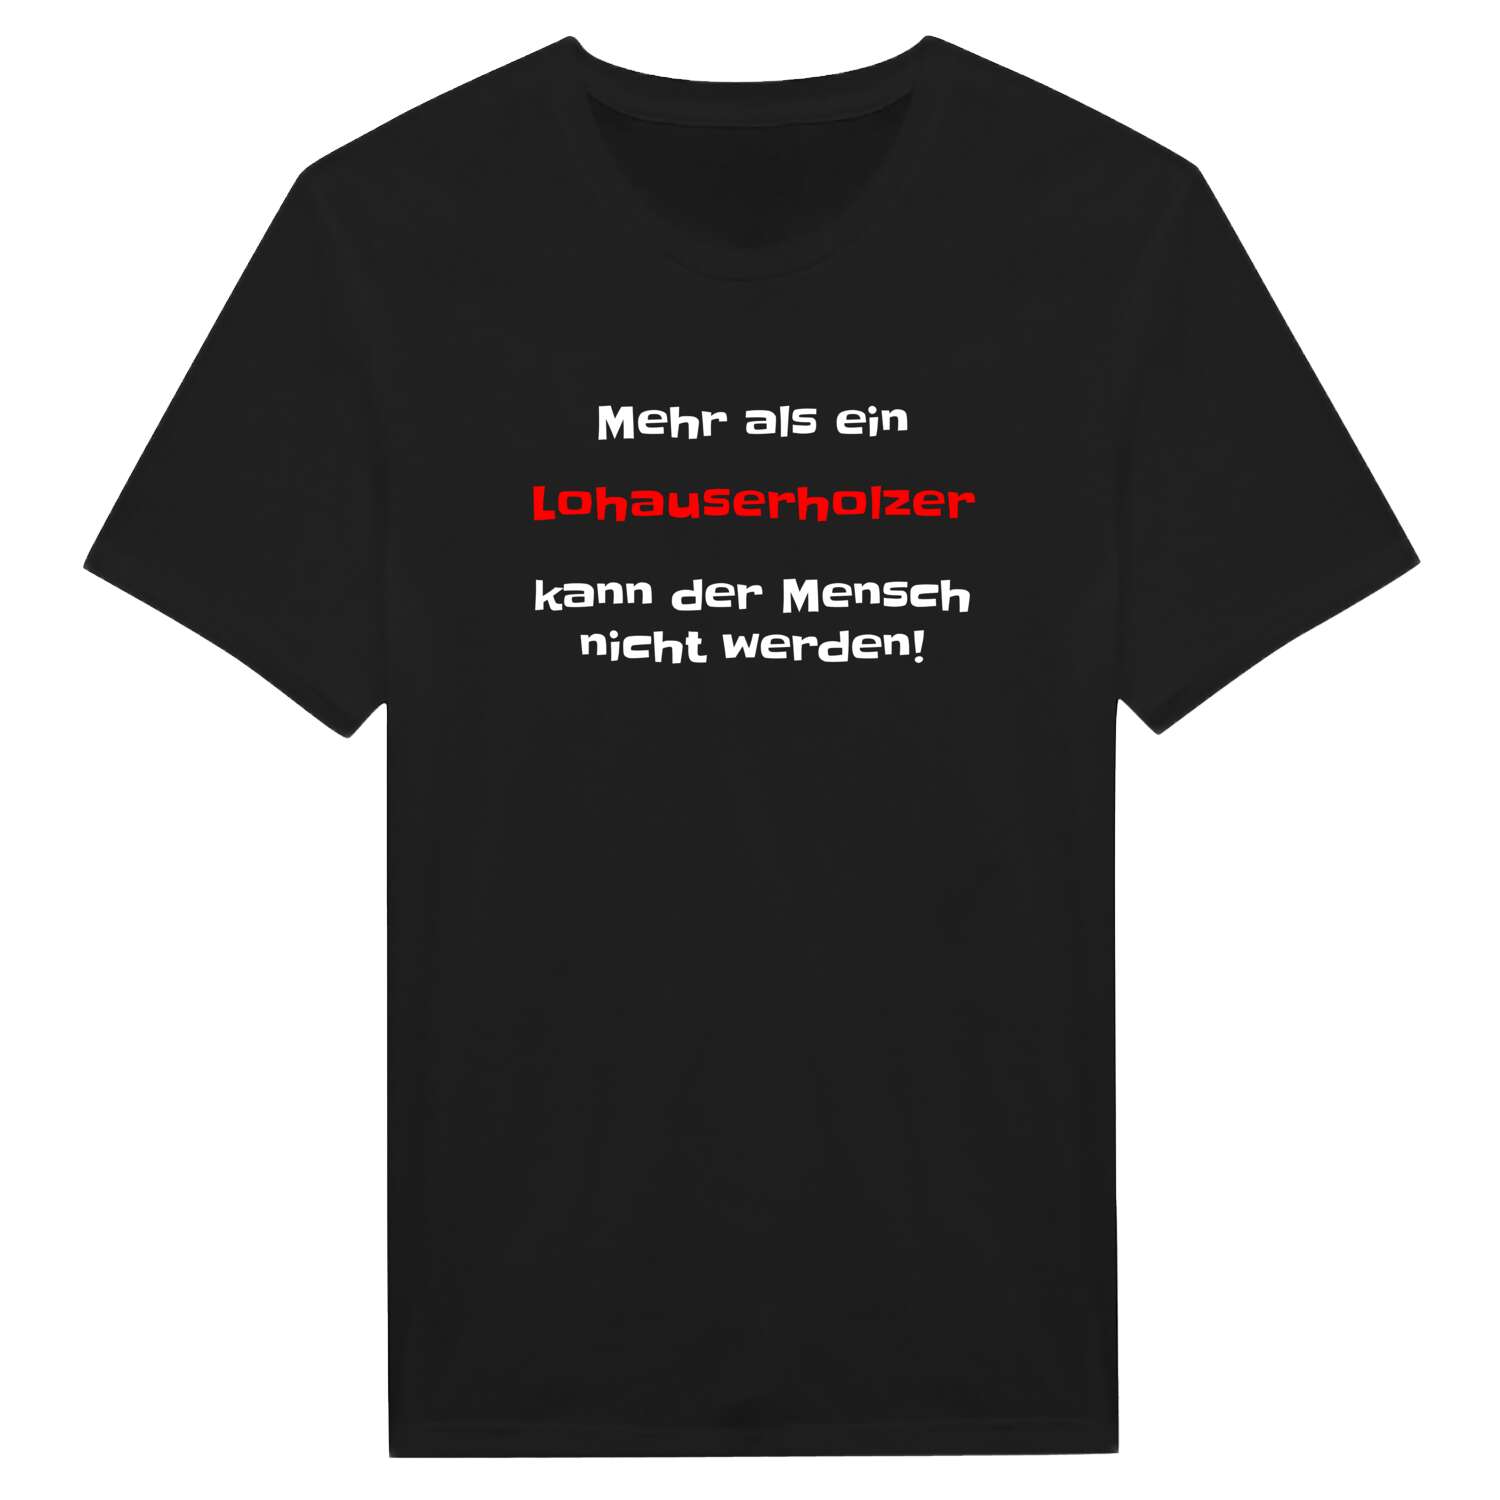 Lohauserholz T-Shirt »Mehr als ein«